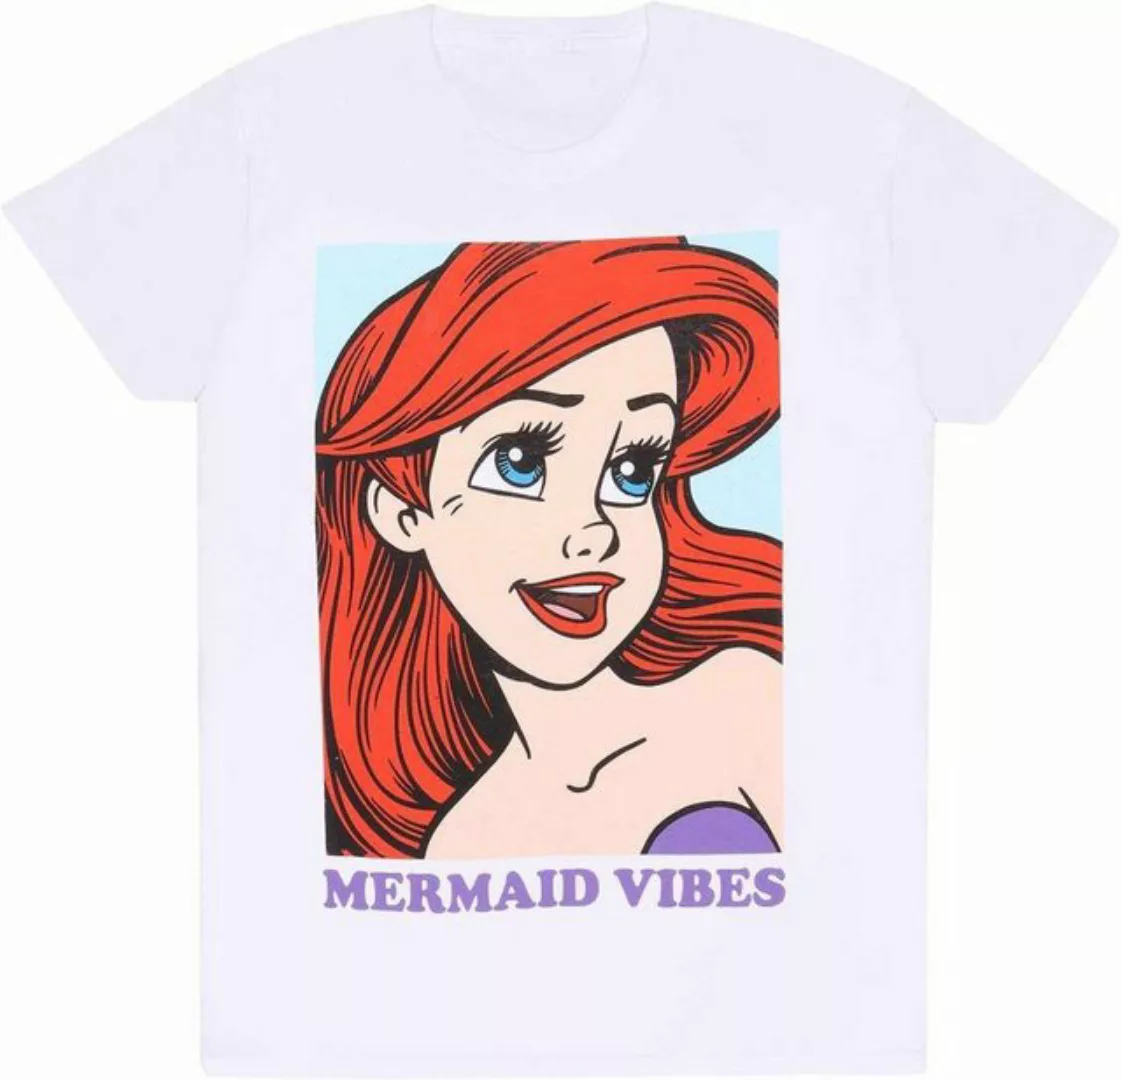 Disney The Little Mermaid T-Shirt günstig online kaufen